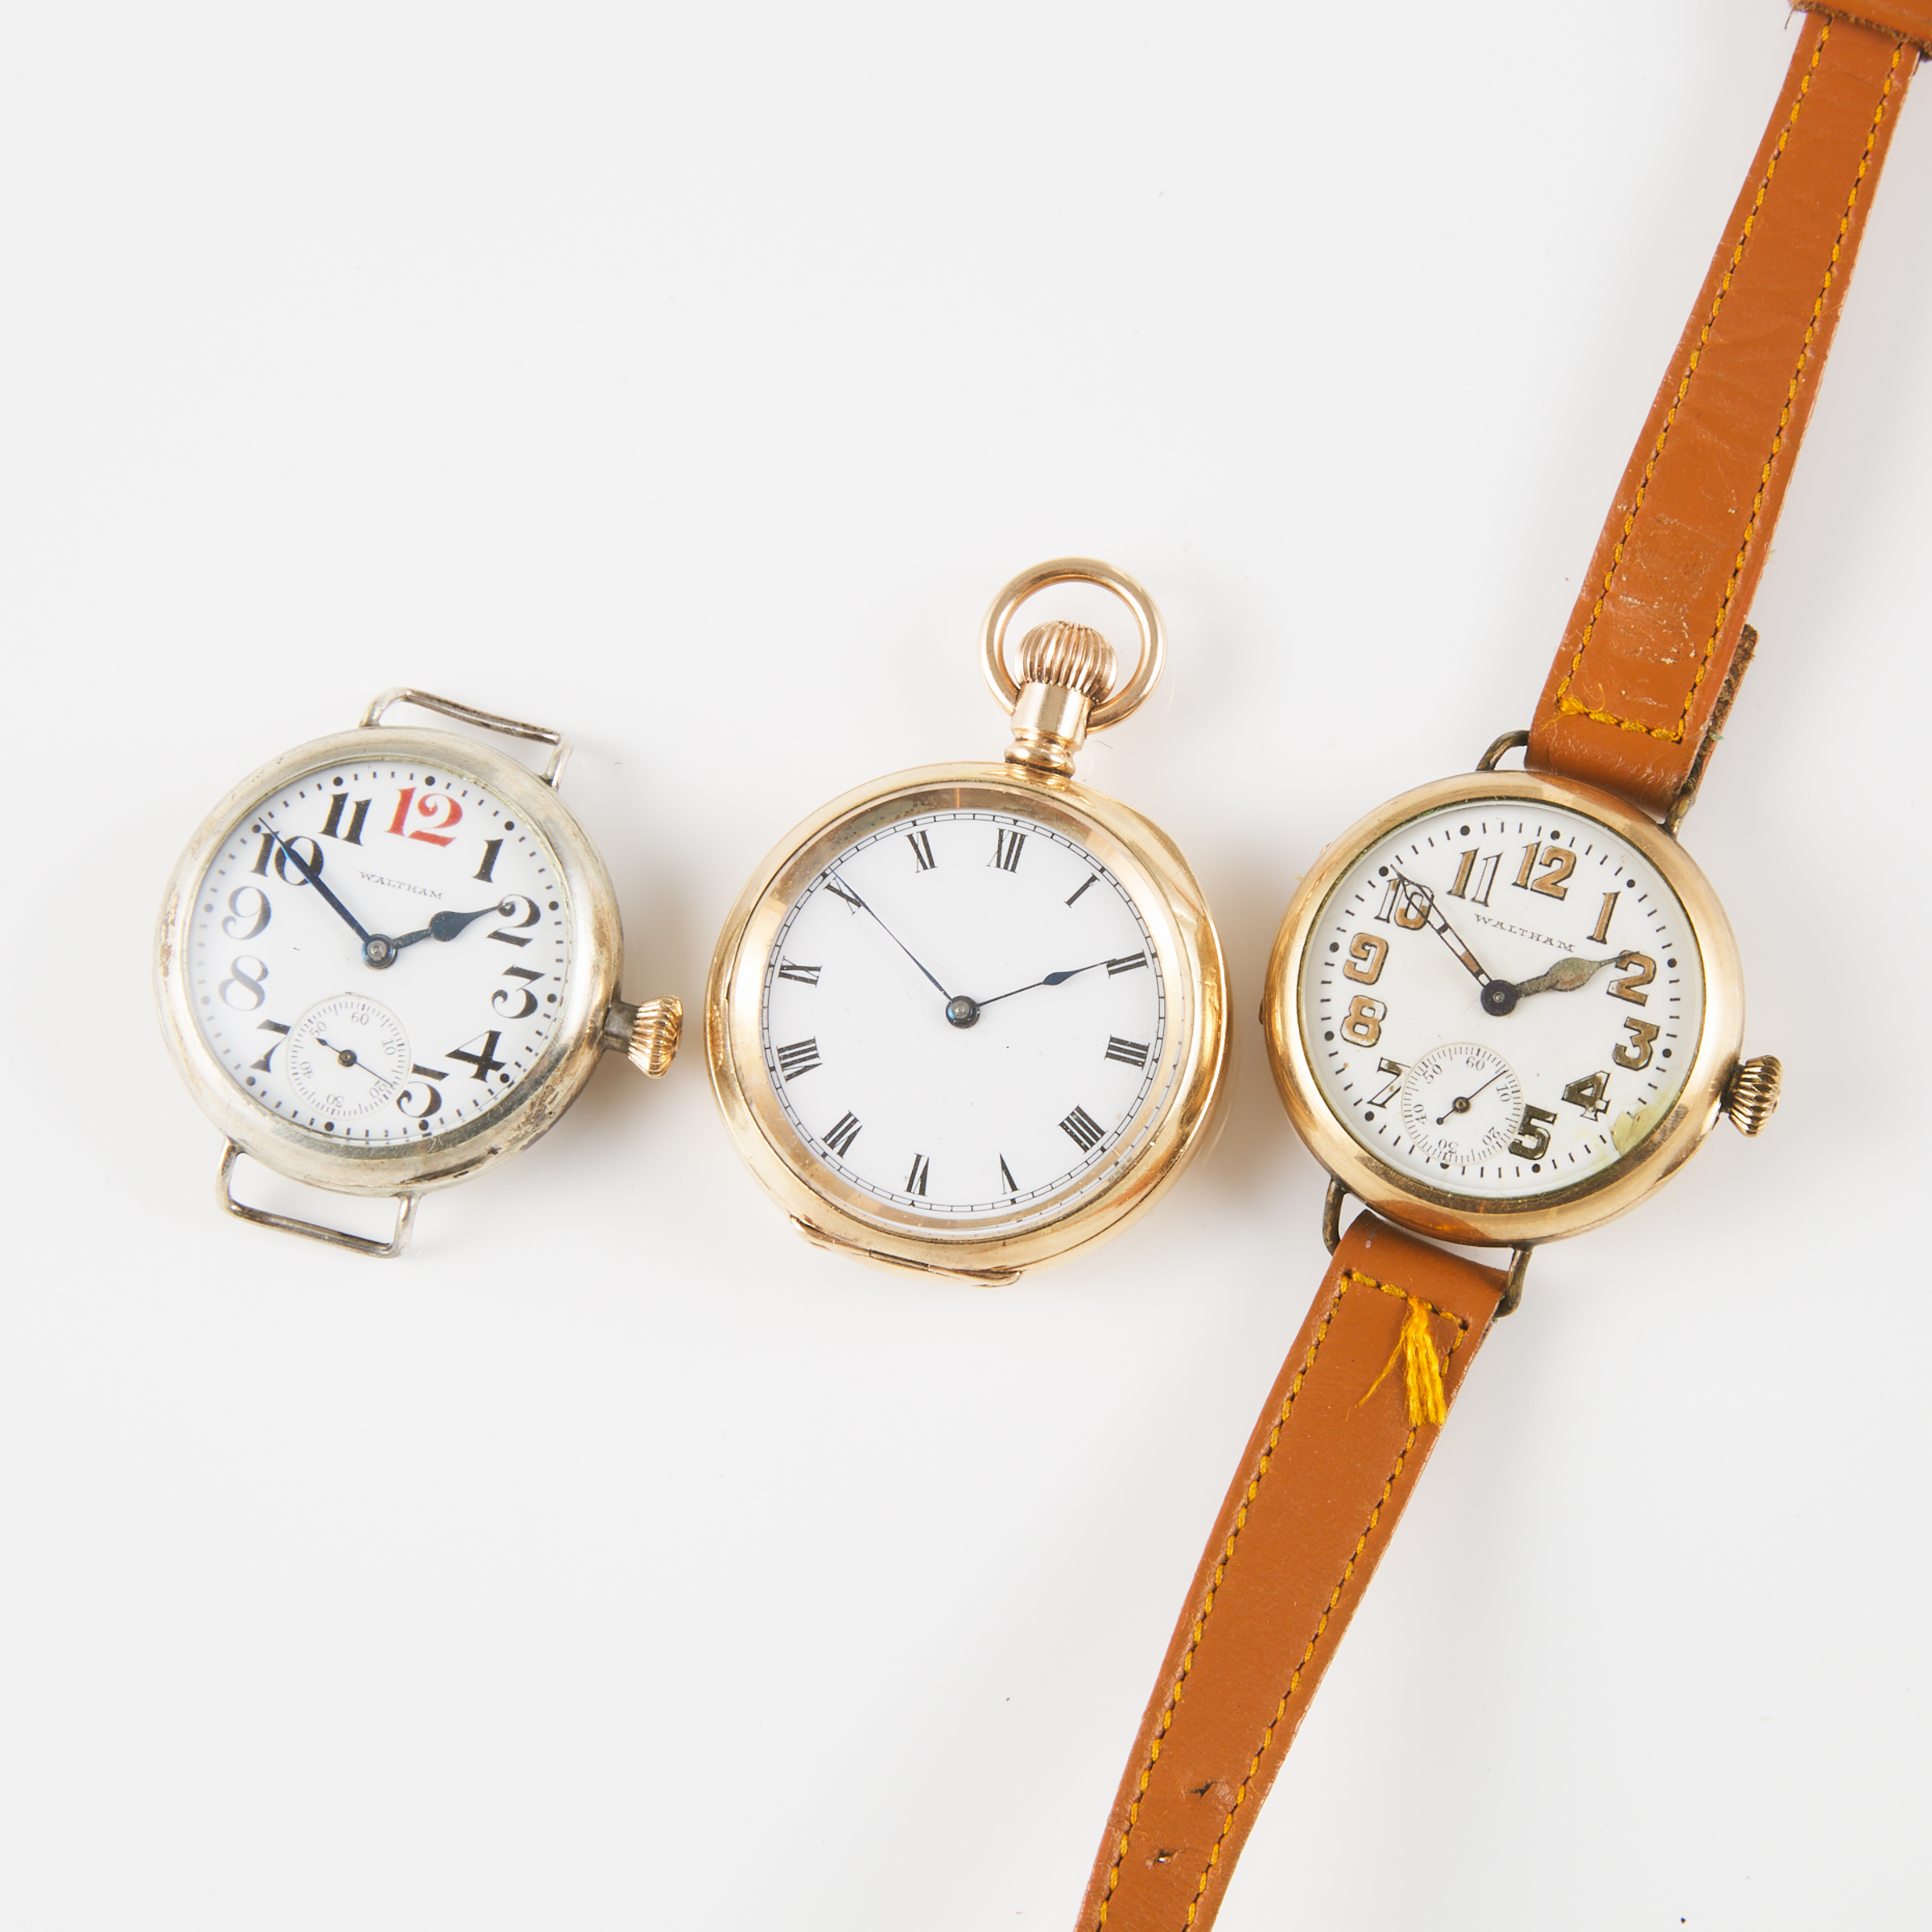 3 Waltham Watches